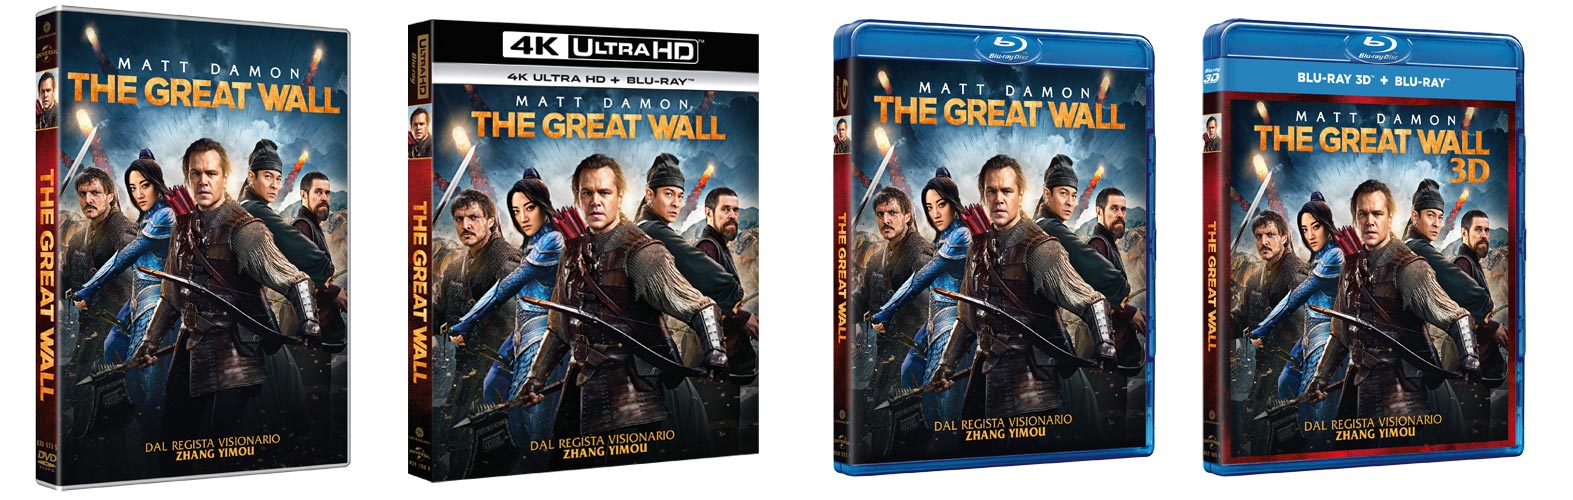 The Great Wall con Matt Damon in DVD, Blu-ray, 4k Ultra HD e Digitale